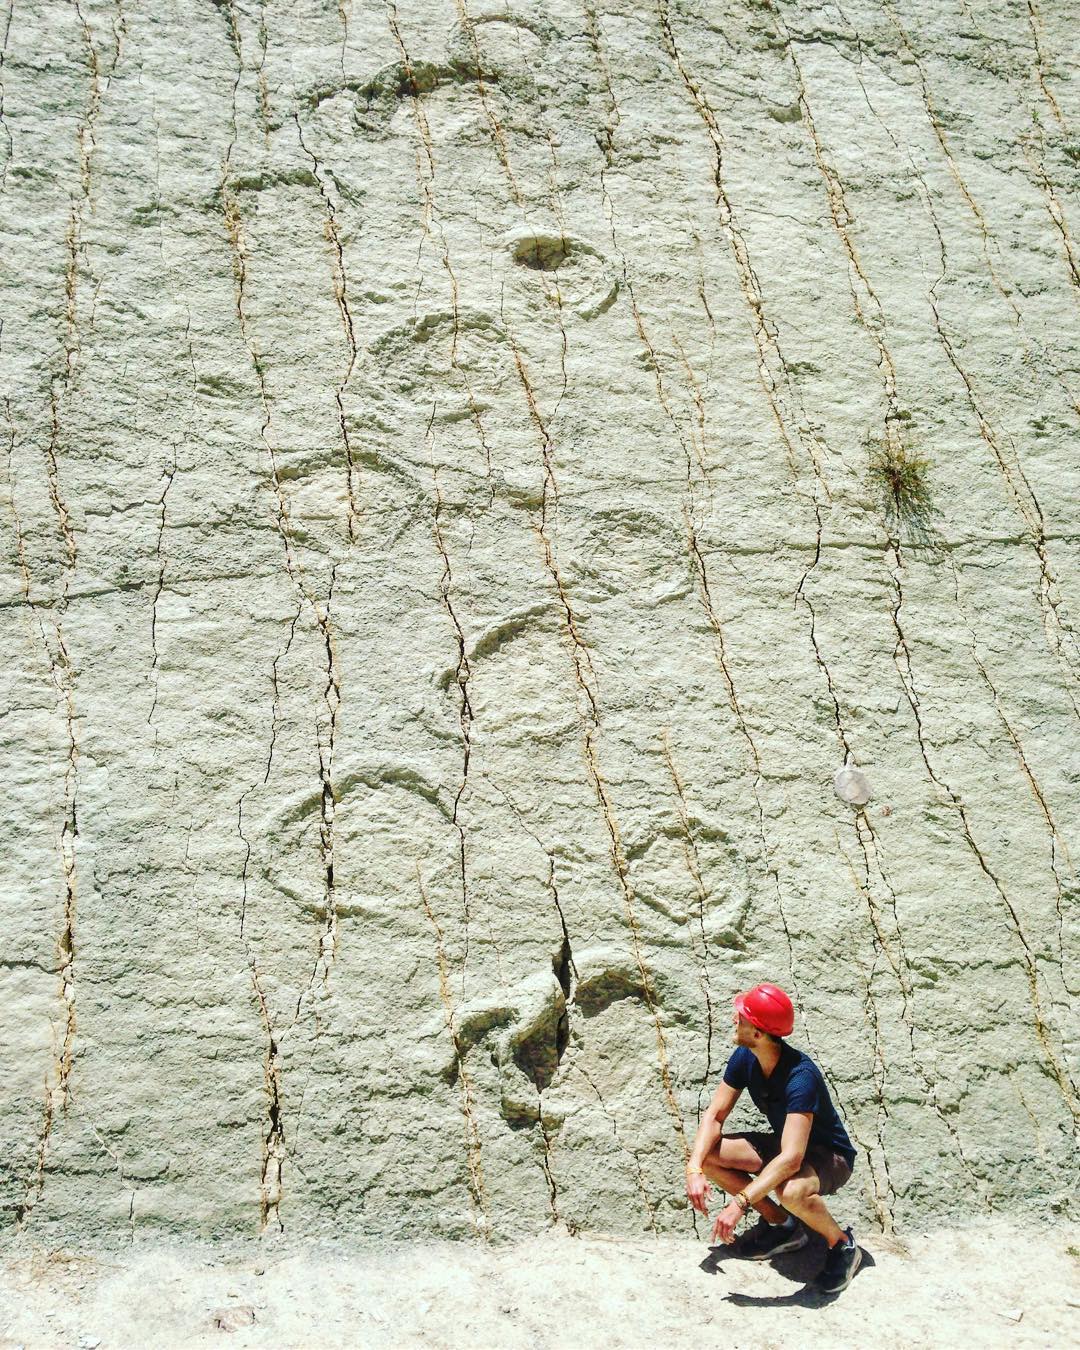 Dinosaur footprints in Bolivia